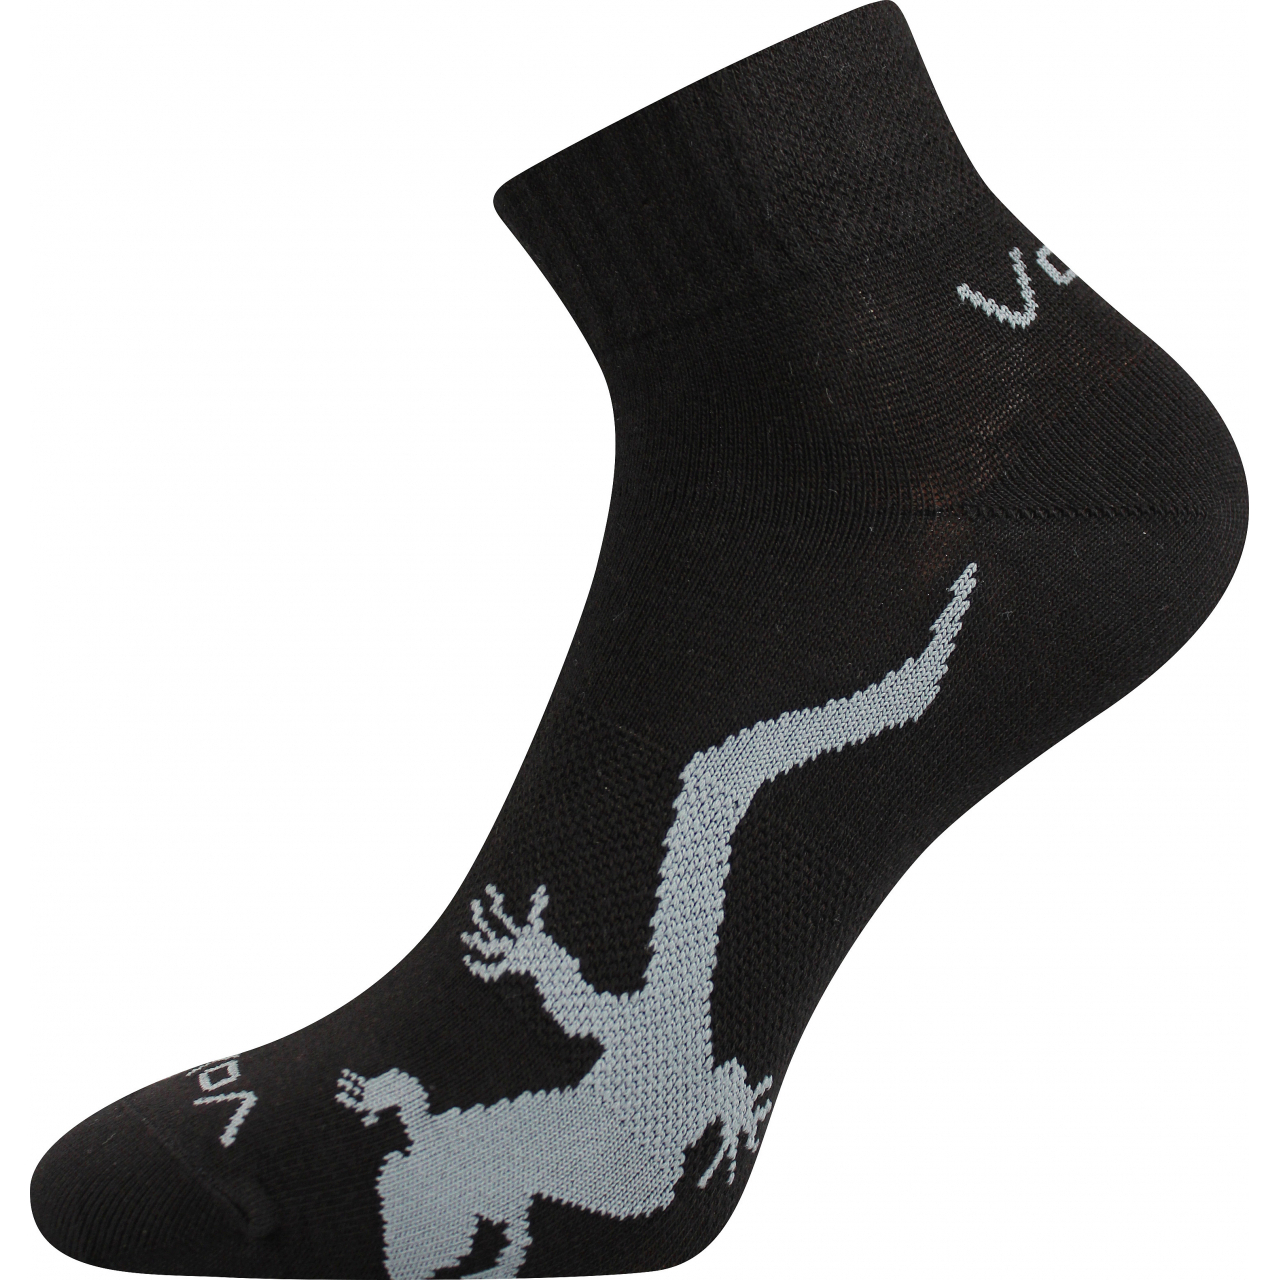 Ponožky dámské Voxx Trinity - černé, 39-42